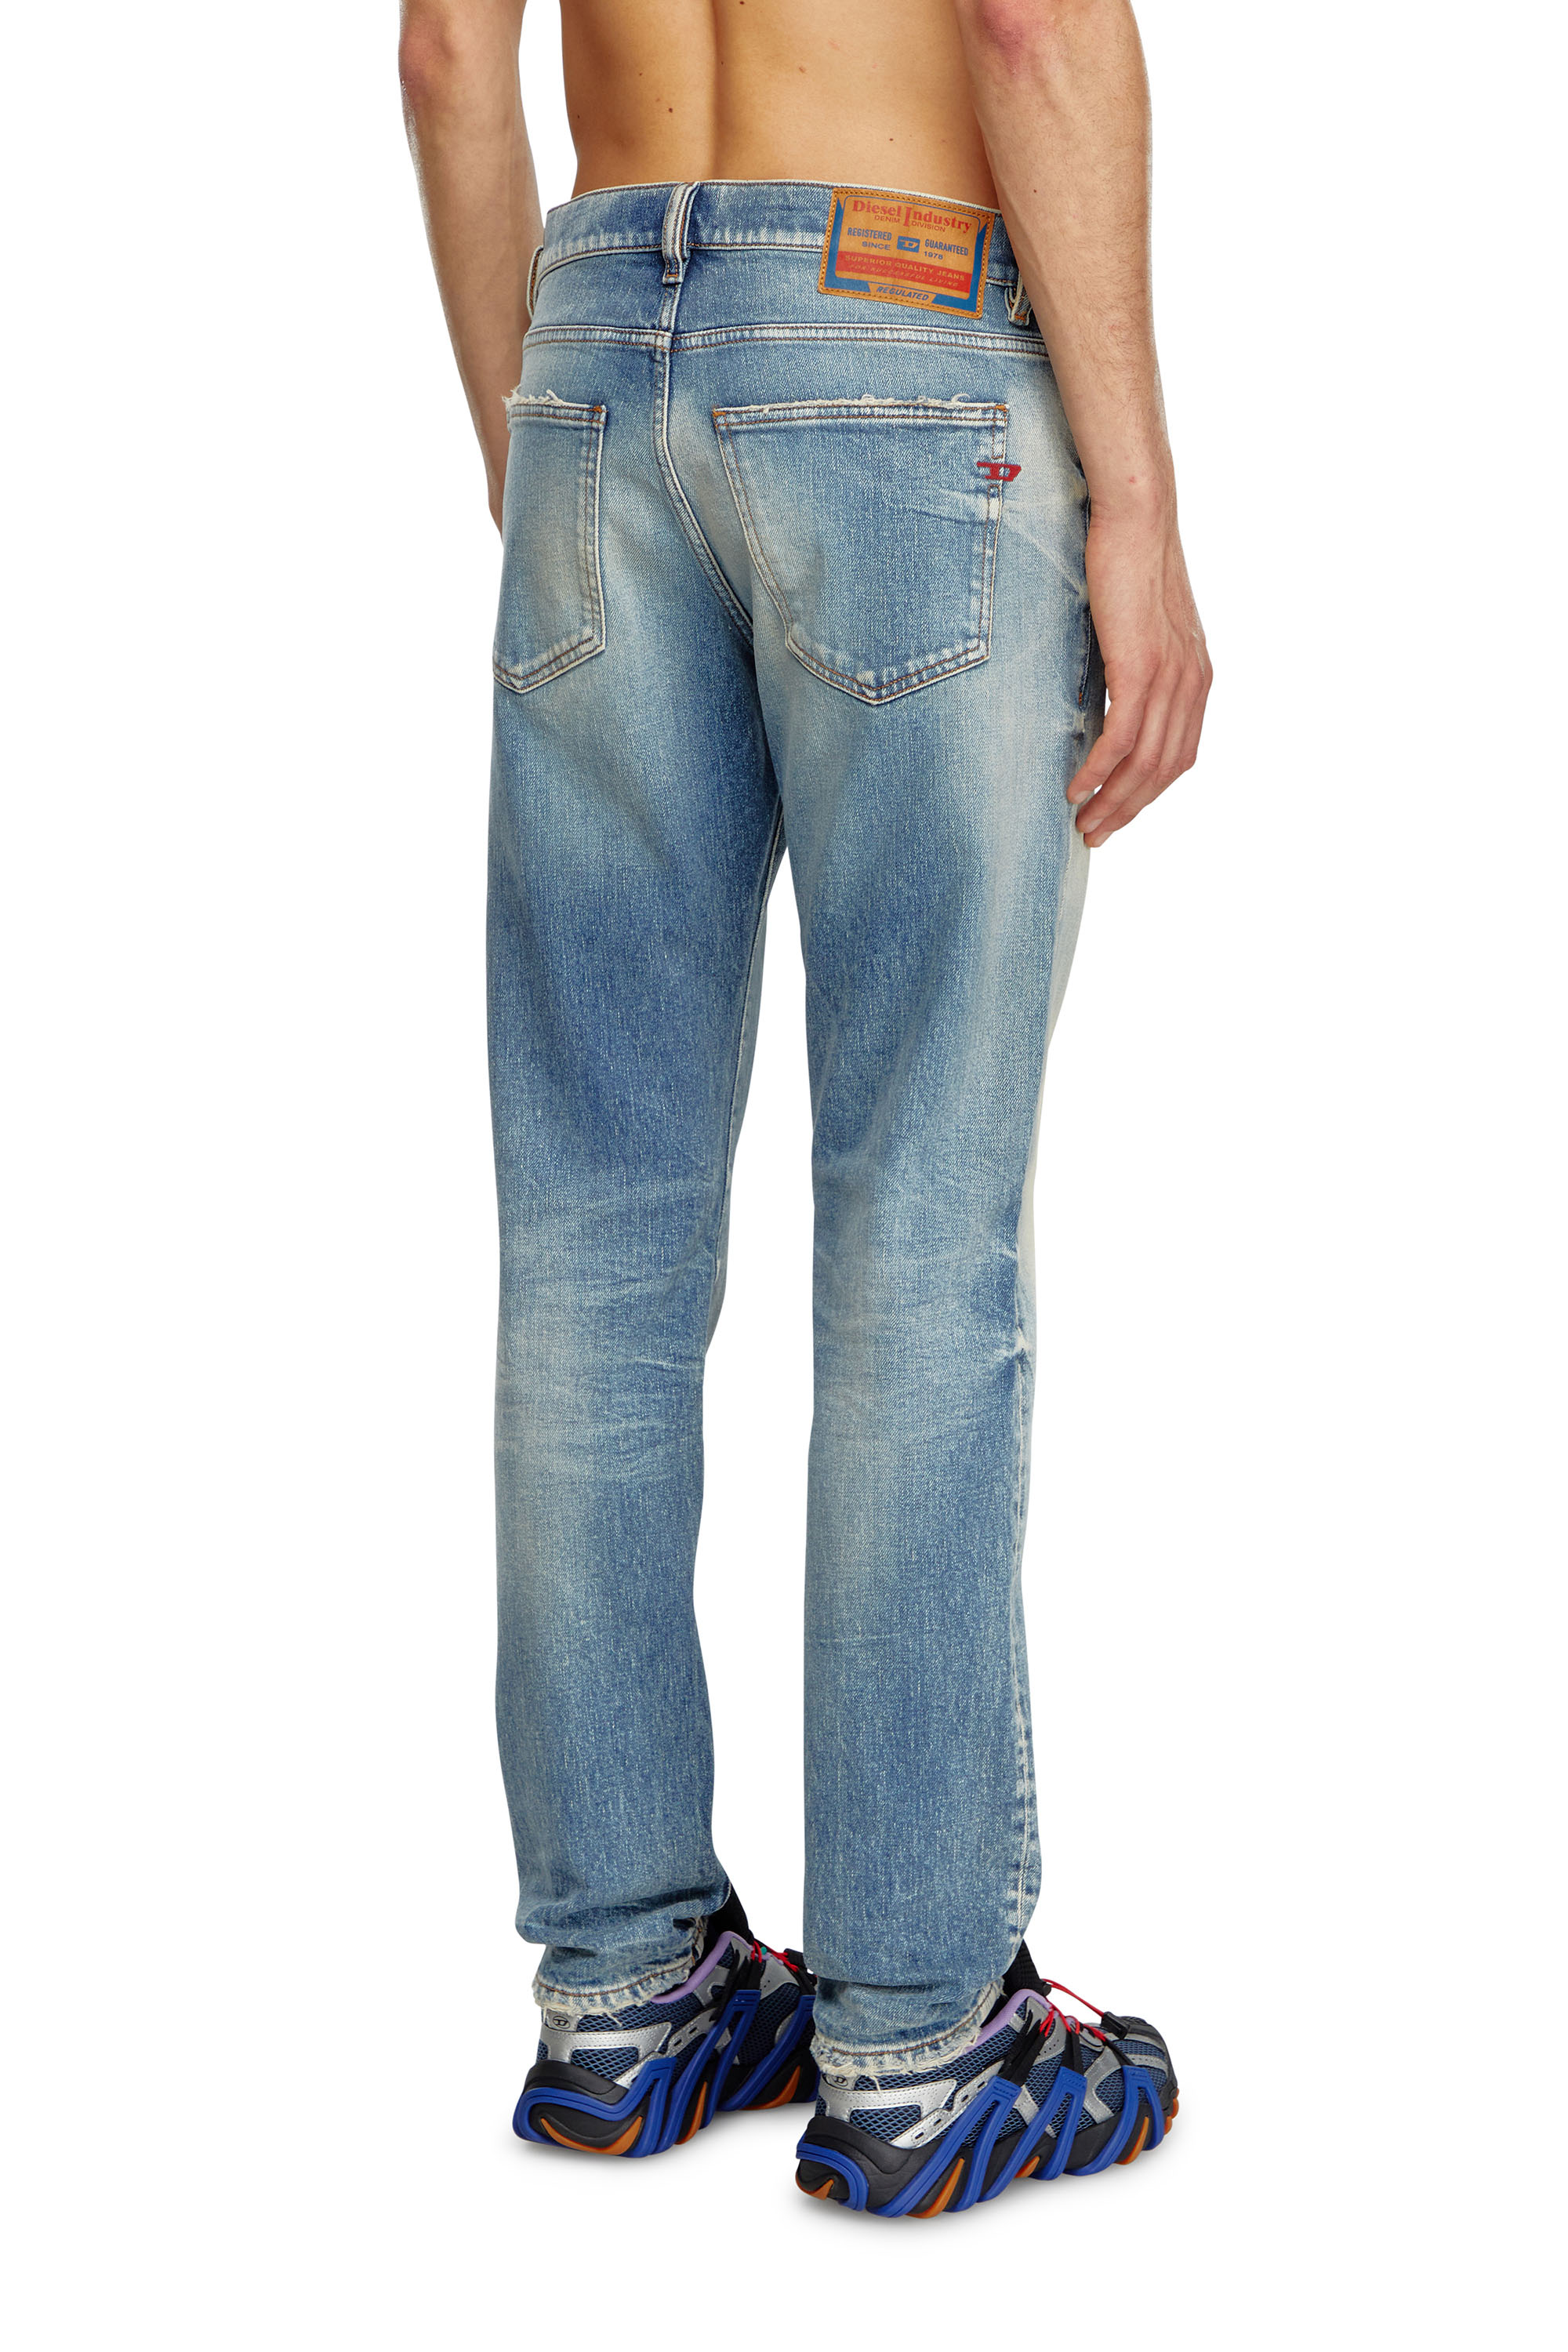 Diesel - Slim Jeans 2019 D-Strukt 007V8, Hombre Slim Jeans - 2019 D-Strukt in Azul marino - Image 4